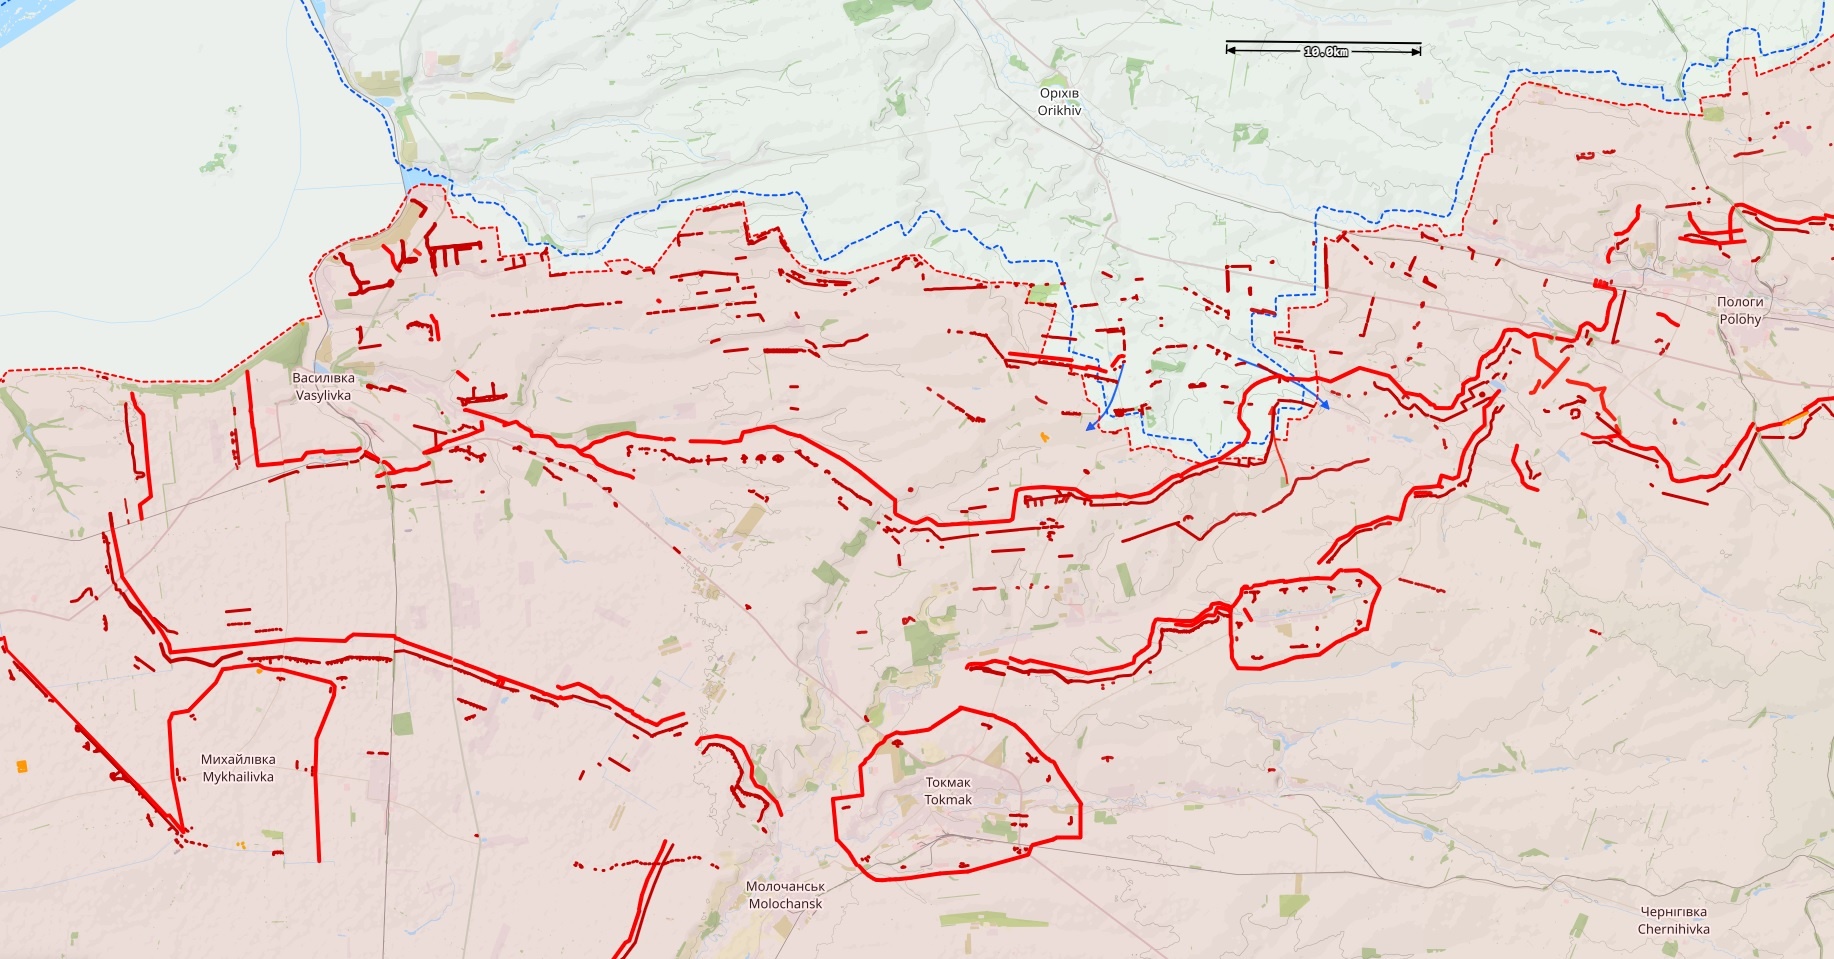 Länsi-Zaporizhzhjan rintamatilanne 4. lokakuuta. Tokmak näkyy kartalla keskellä alhaalla. Siniset nuolet ovat Ukrainan hyökkäyksiä. Paksut punaiset viivat ovat Venäjän tiedettyjä valmisteja puolustusasemia. Kartta: The War in Ukraine -tilannekartta / Black Bird Group.